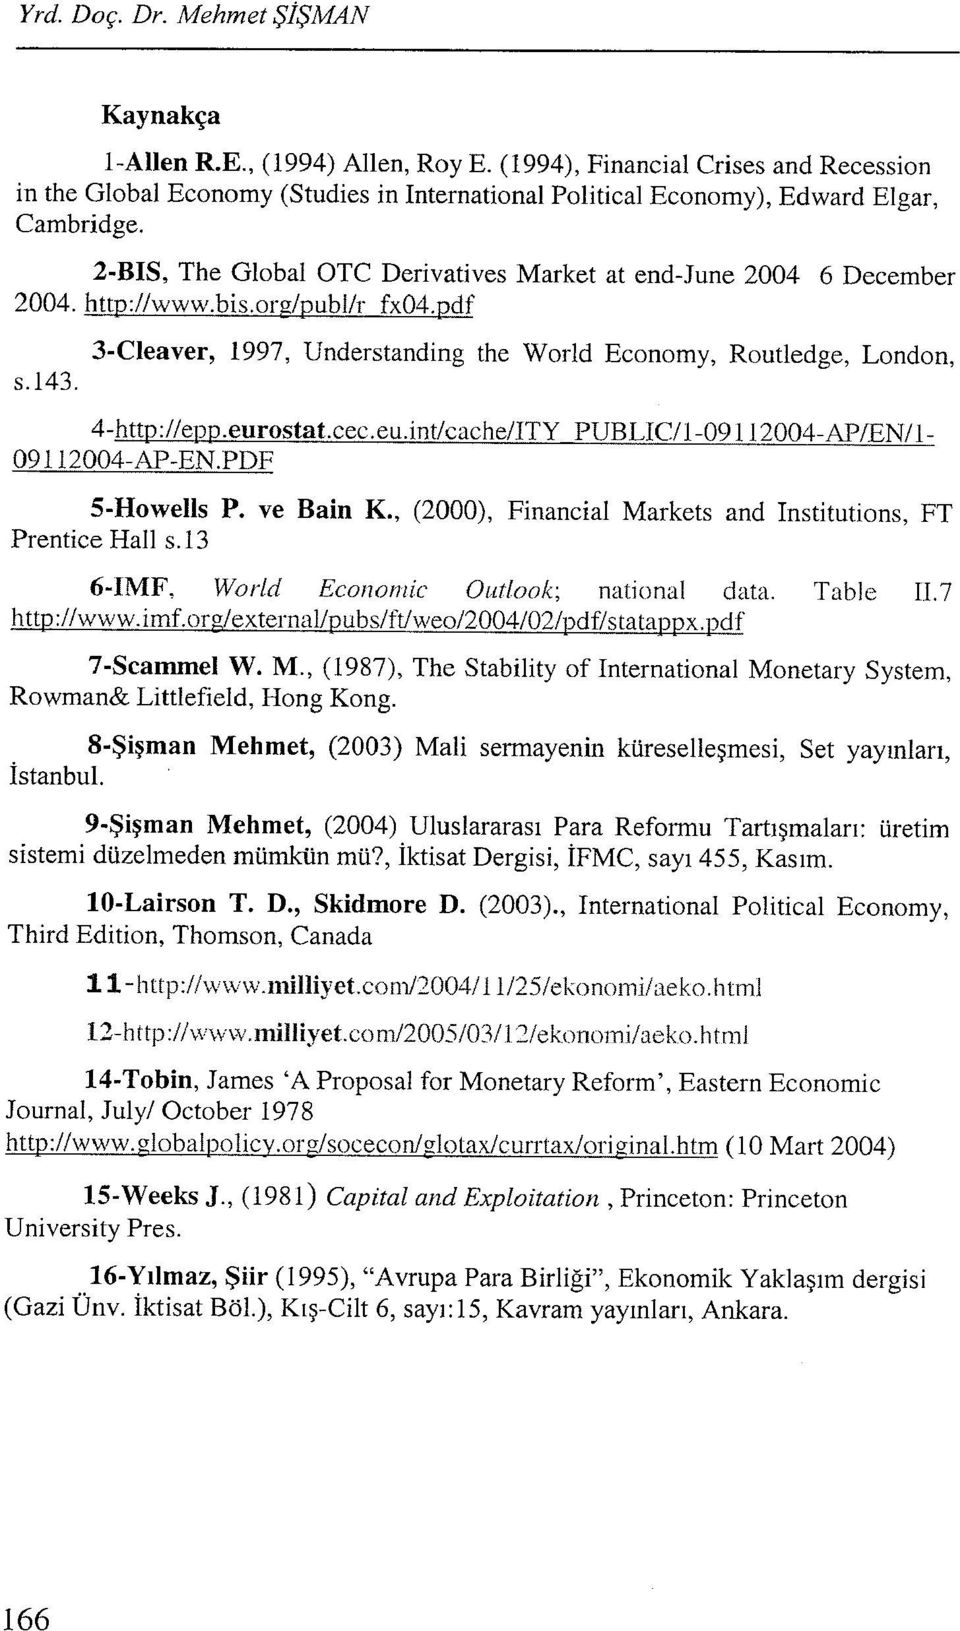 eurostat.cec.eu.int/cache/ITY 09112004-AP-EN.PDF PUBLIC/l-09112004-AP/EN/l- S-Howells P. ve Bain K., (2000), Financial Markets and Institutions, FT Prentice Hall s.